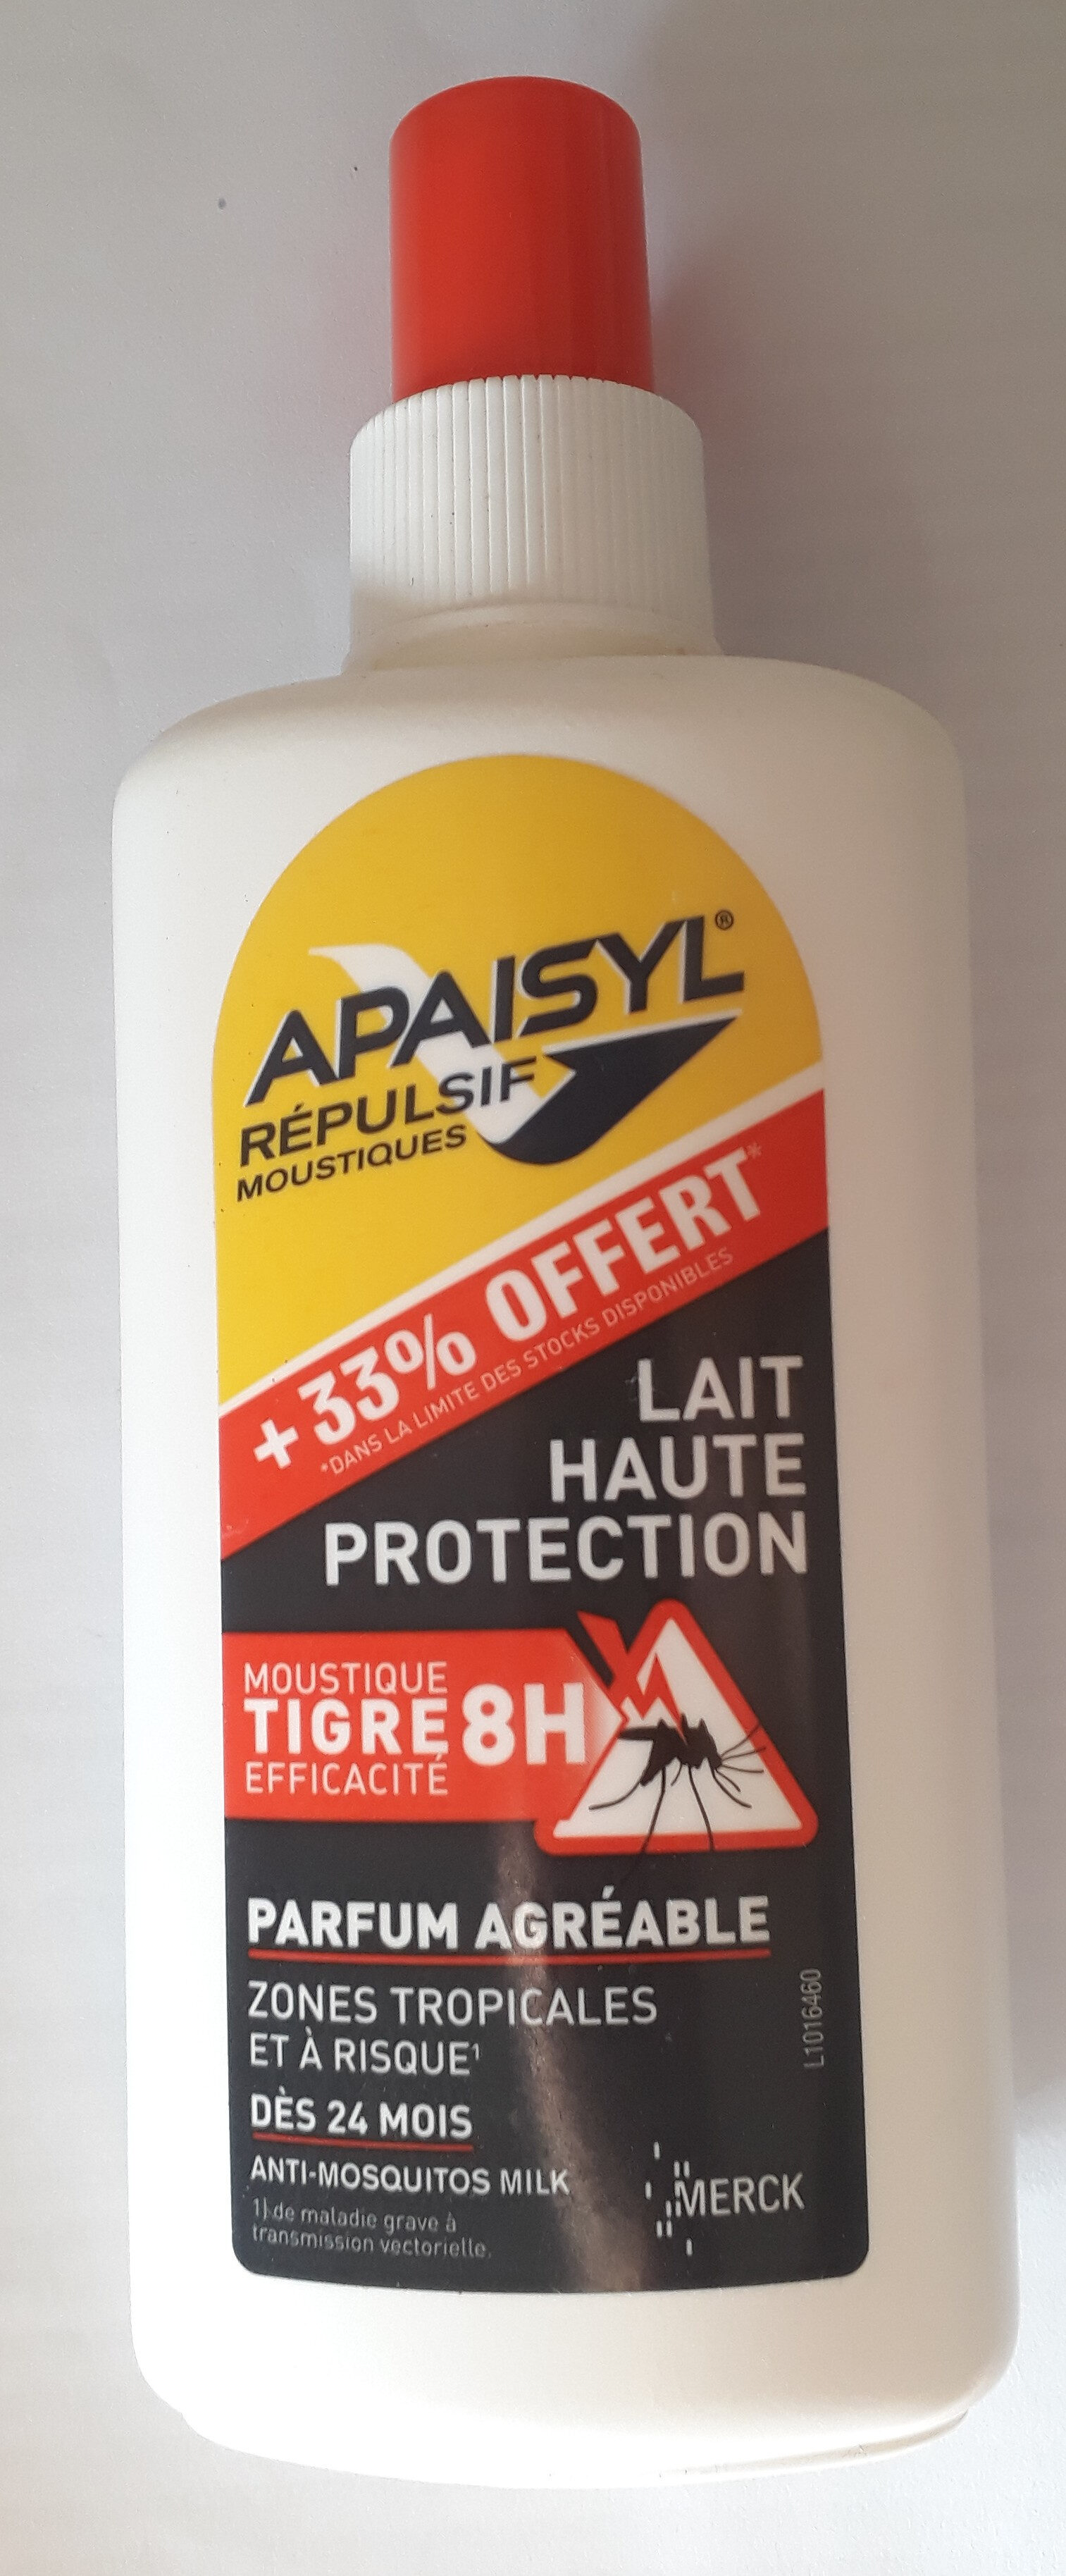 Apaisyl Répulsif Moustiques Lait haute protection - Product - fr